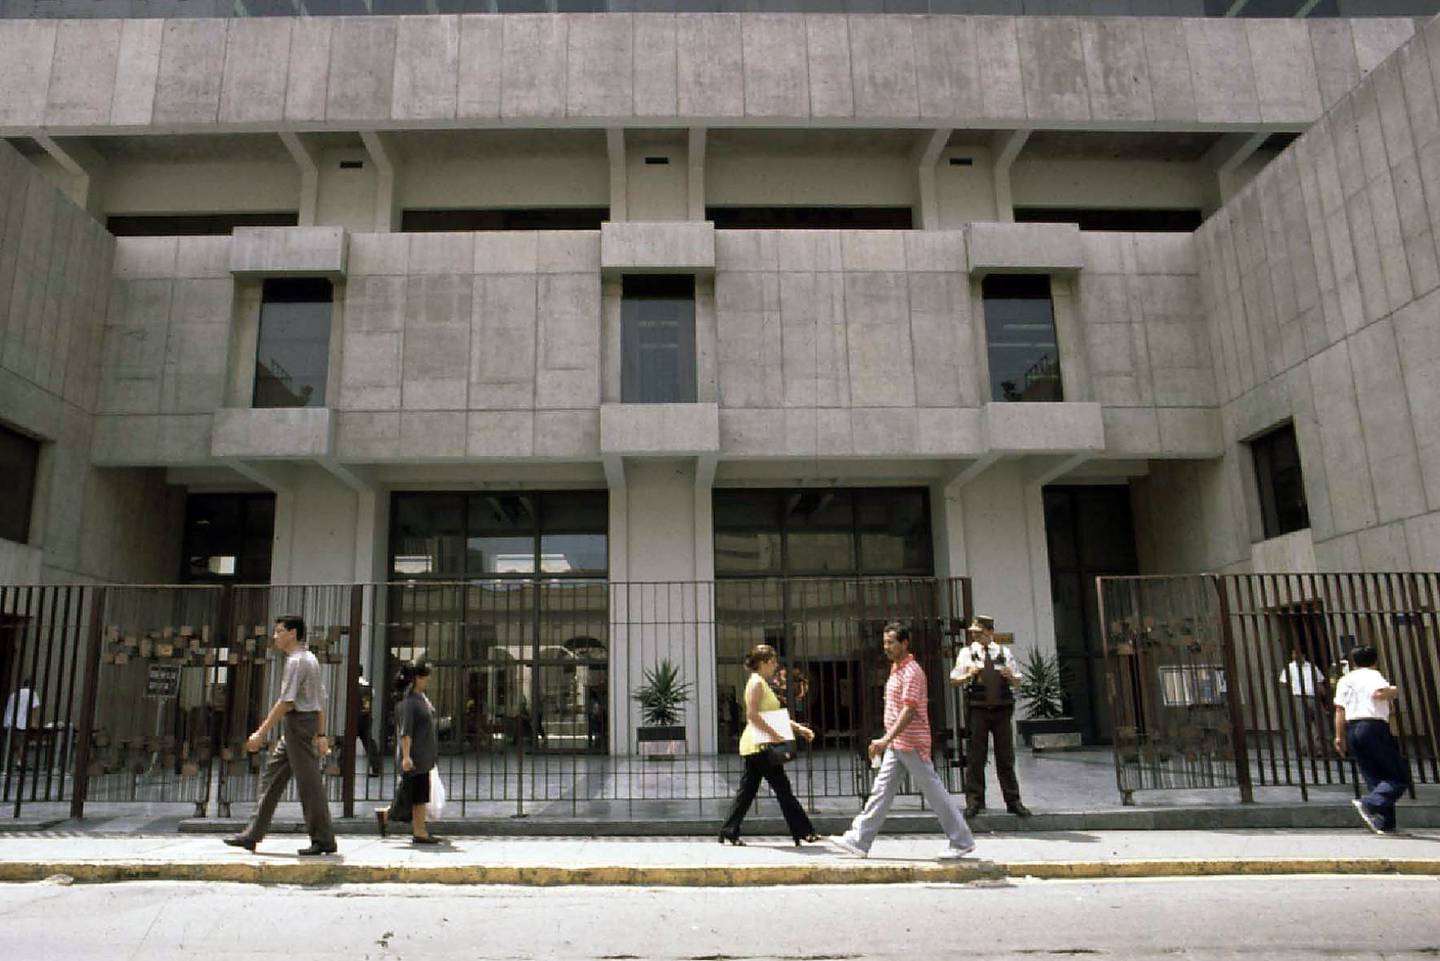 Banco Central de Reserva de Perú siguió subiendo su tasa de interés este jueves.dfd